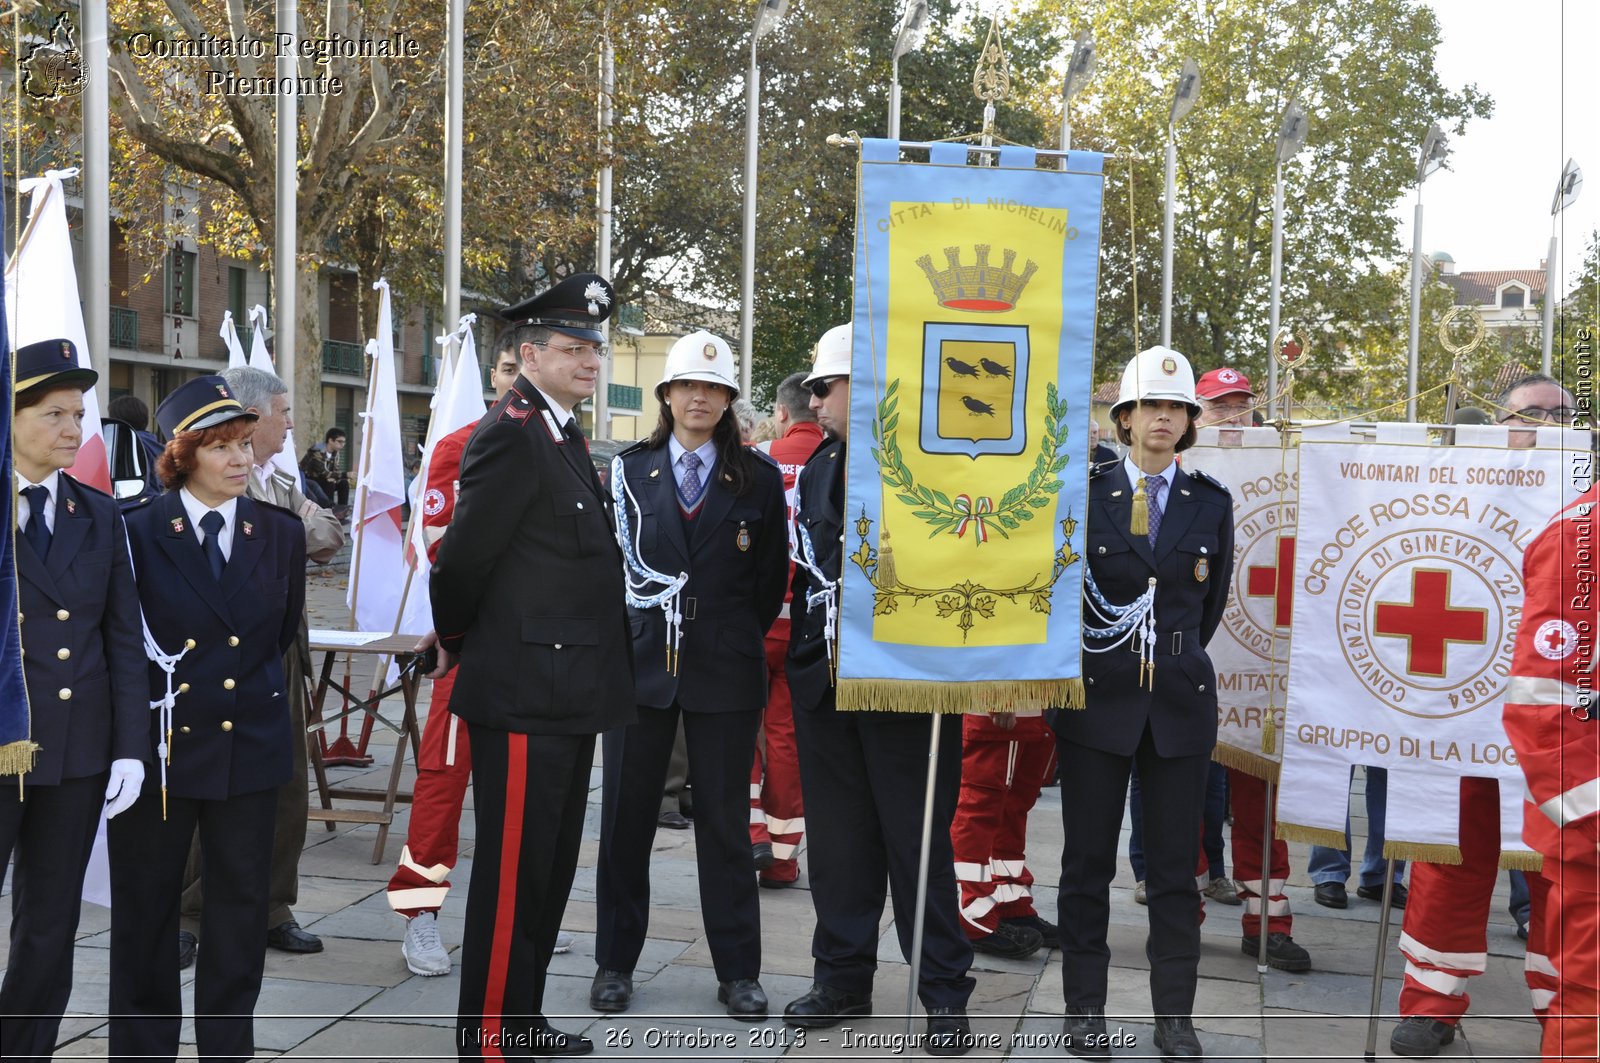 Nichelino - 26 Ottobre 2013 - Inaugurazione nuova sede - Comitato Regionale del Piemonte